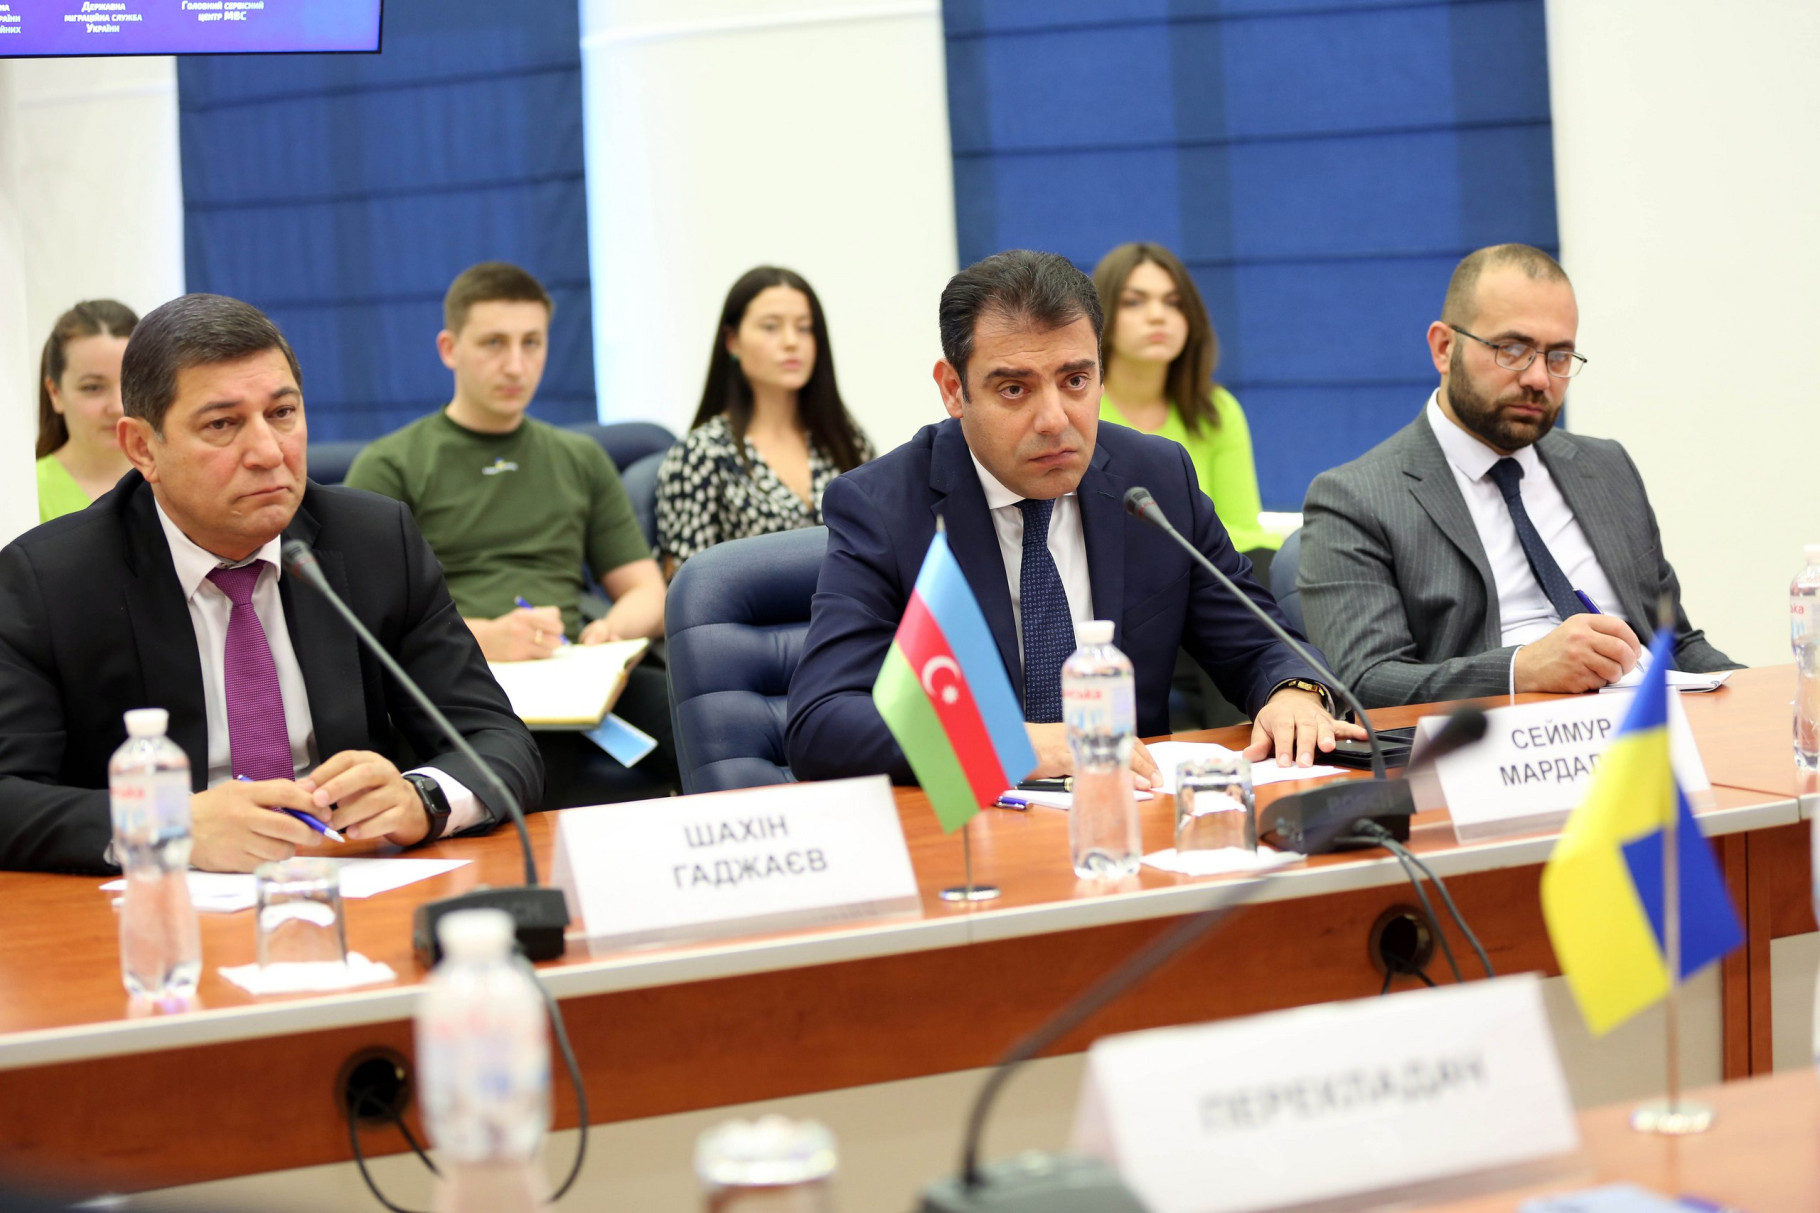 Посол Азербайджану в Україні Сеймур Мардалієв